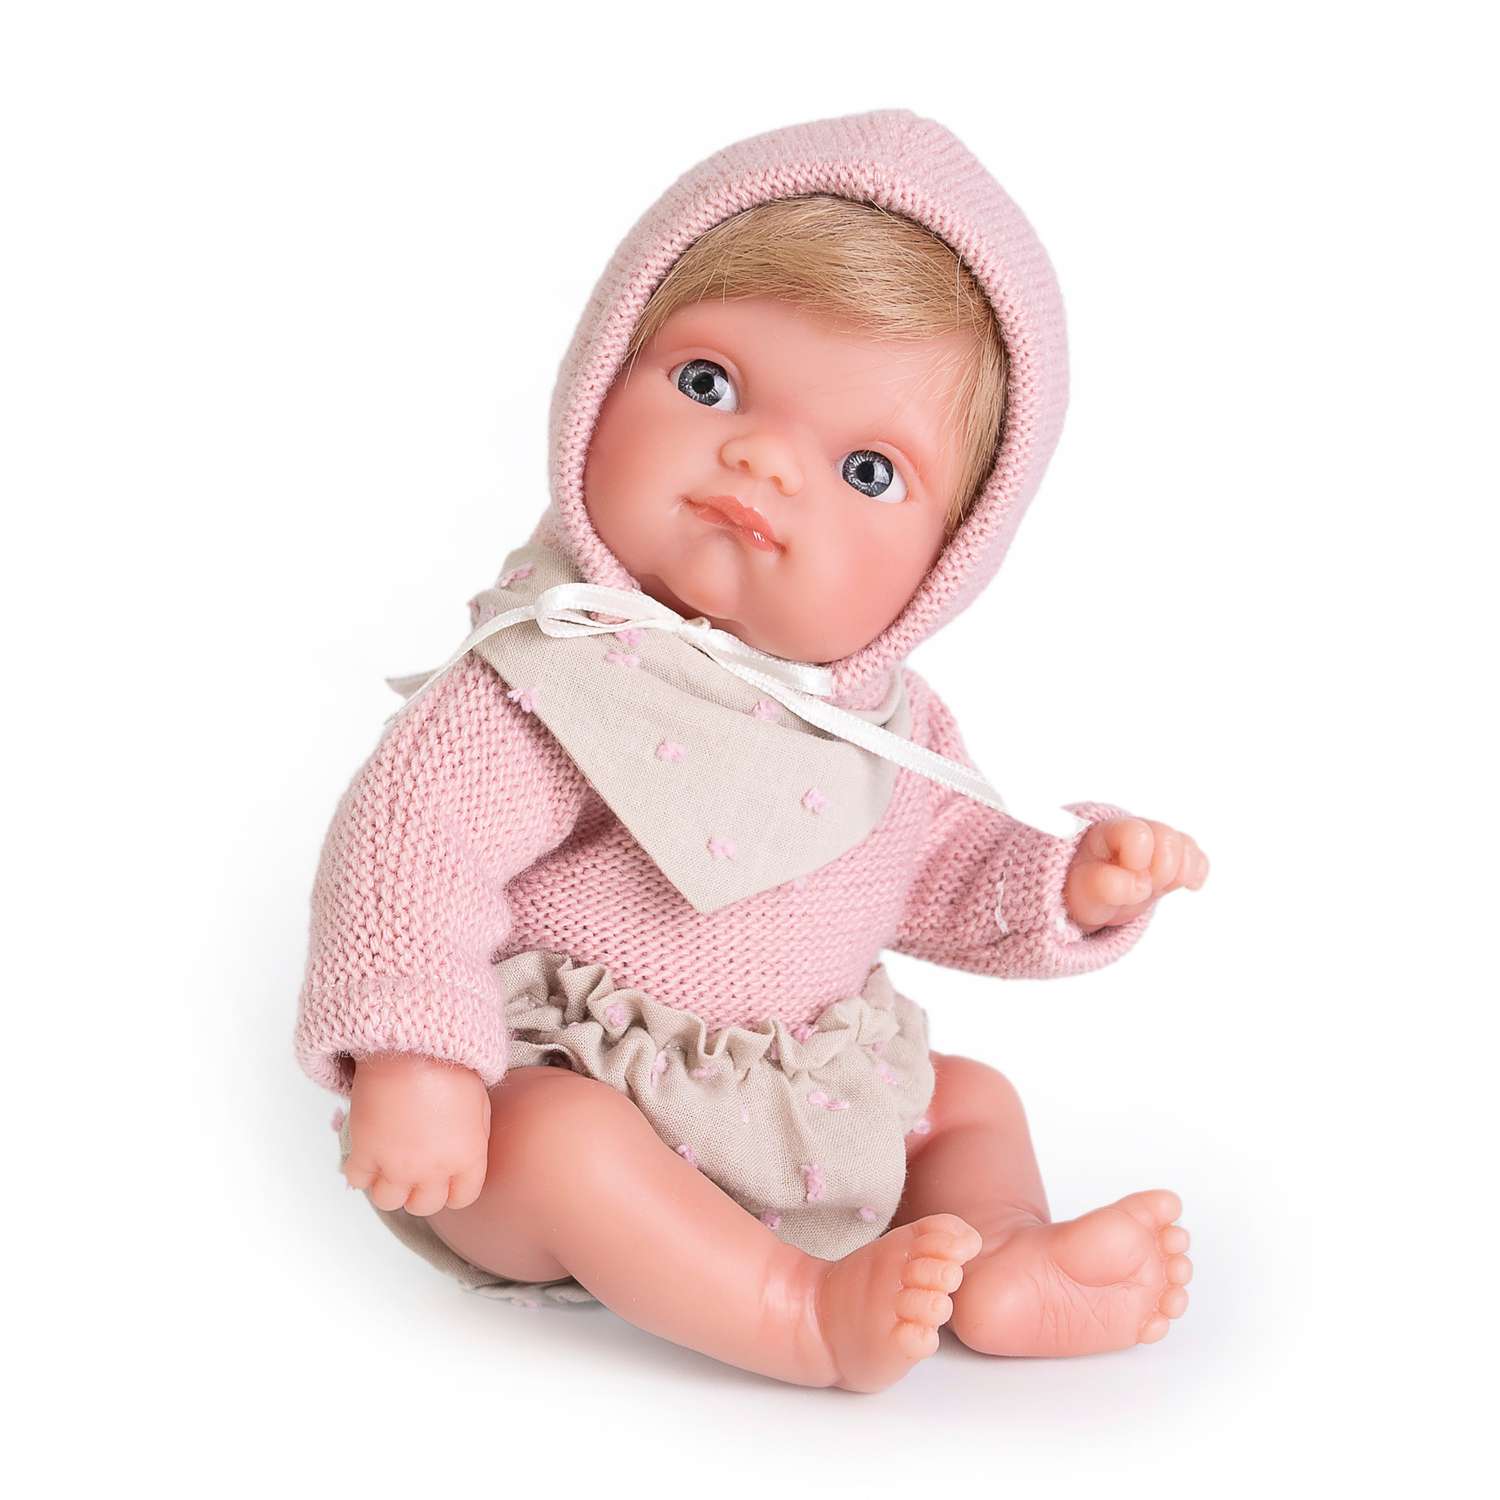 Кукла пупс Antonio Juan Реборн Глаша в сумочке-переноске 21 см виниловая 85211 - фото 1